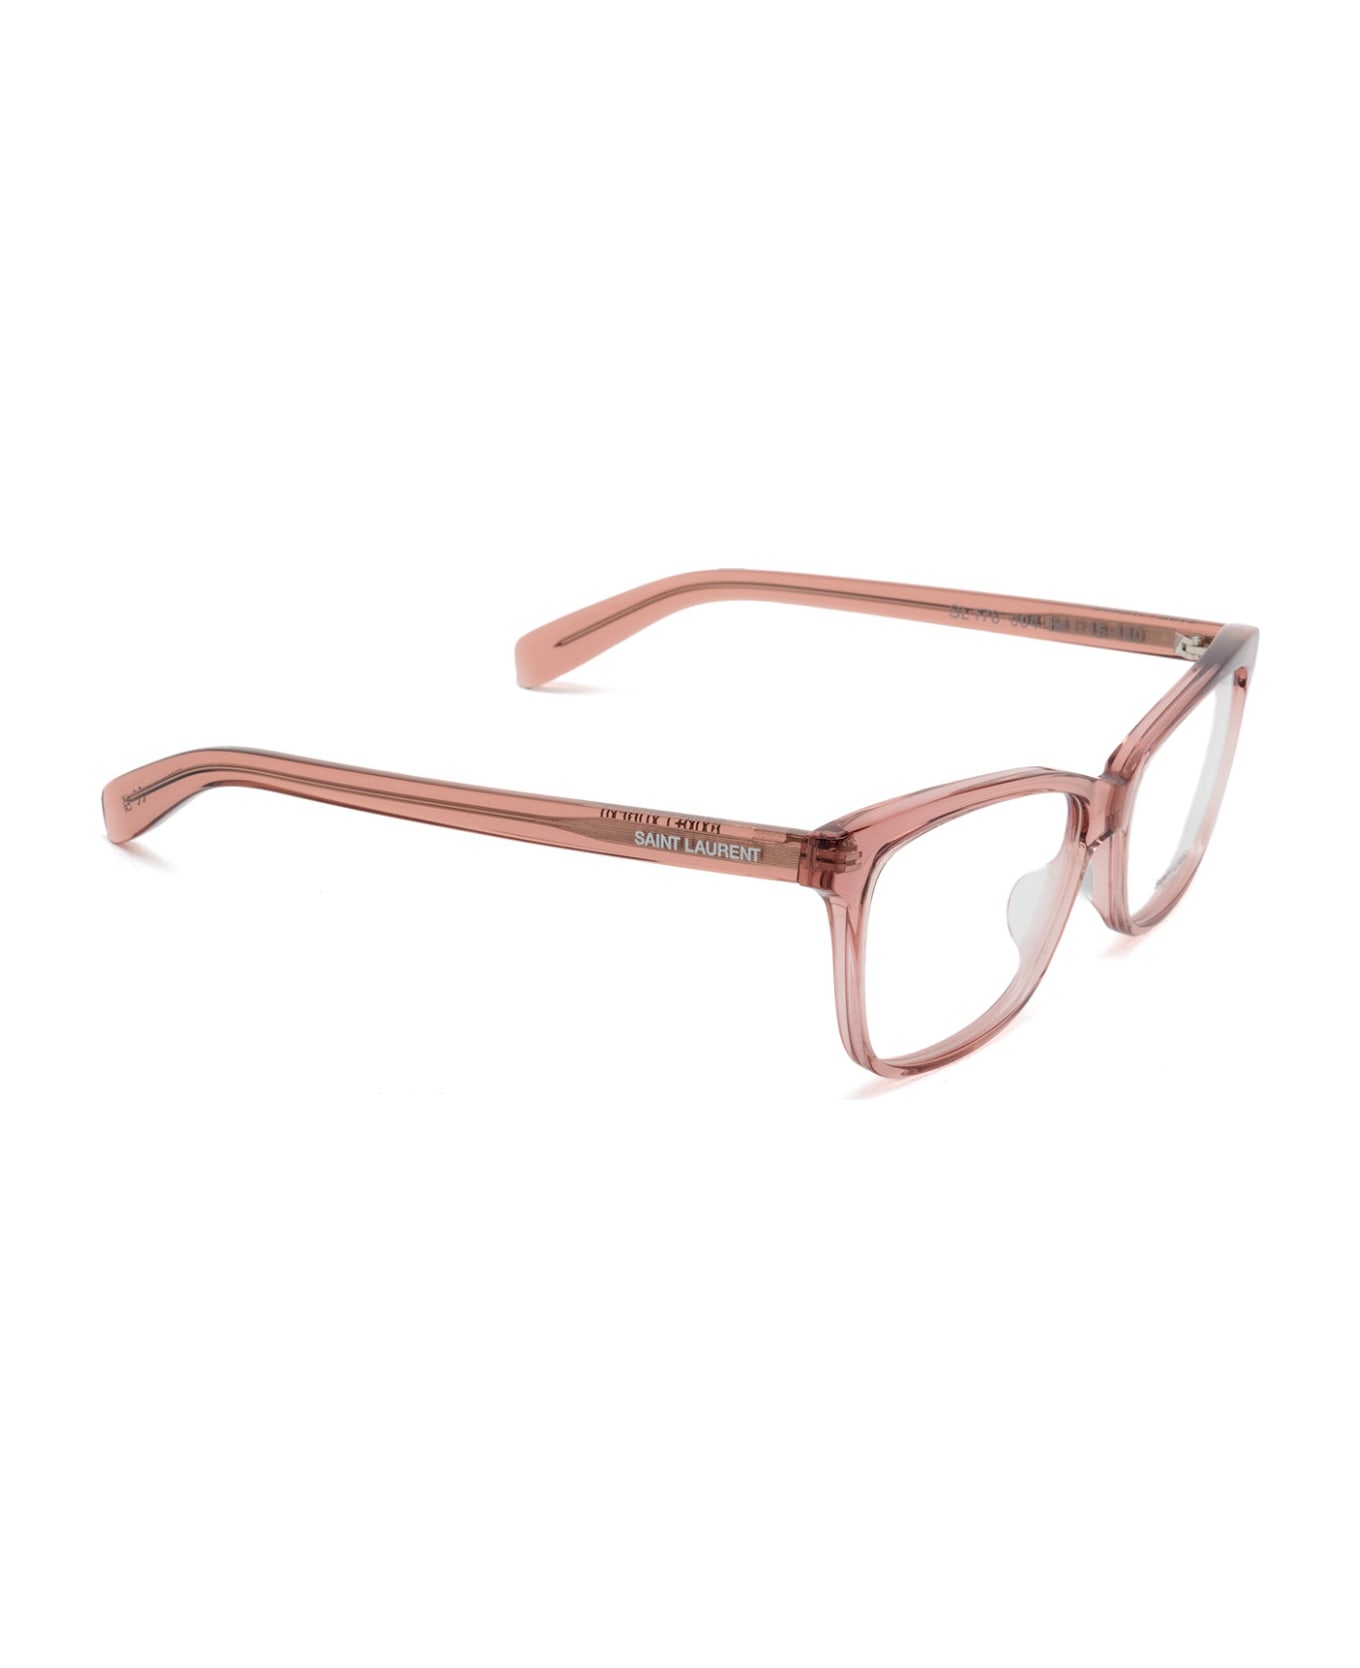 Saint Laurent Eyewear Sl 170 Nude Glasses - Nude